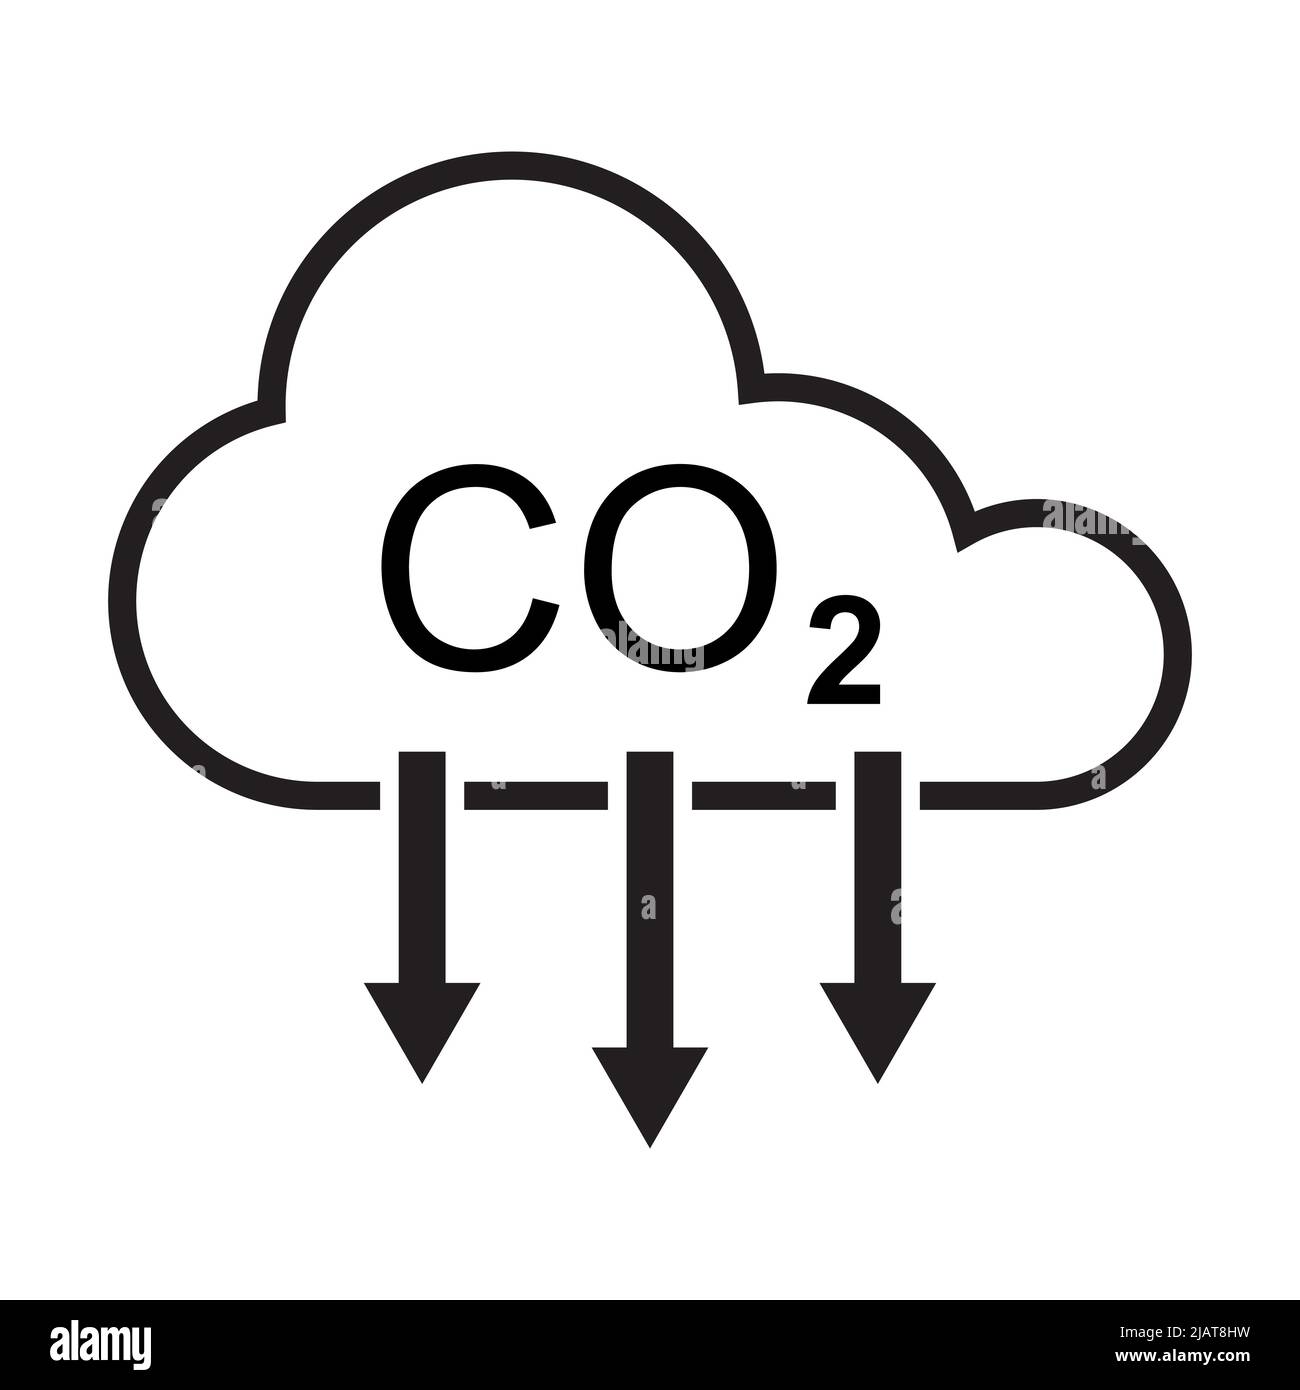 Symbolvektor zur Reduzierung von CO2-Emissionen für Grafikdesign, Logo, Website, soziale Medien, mobile App, UI-Abbildung Stock Vektor